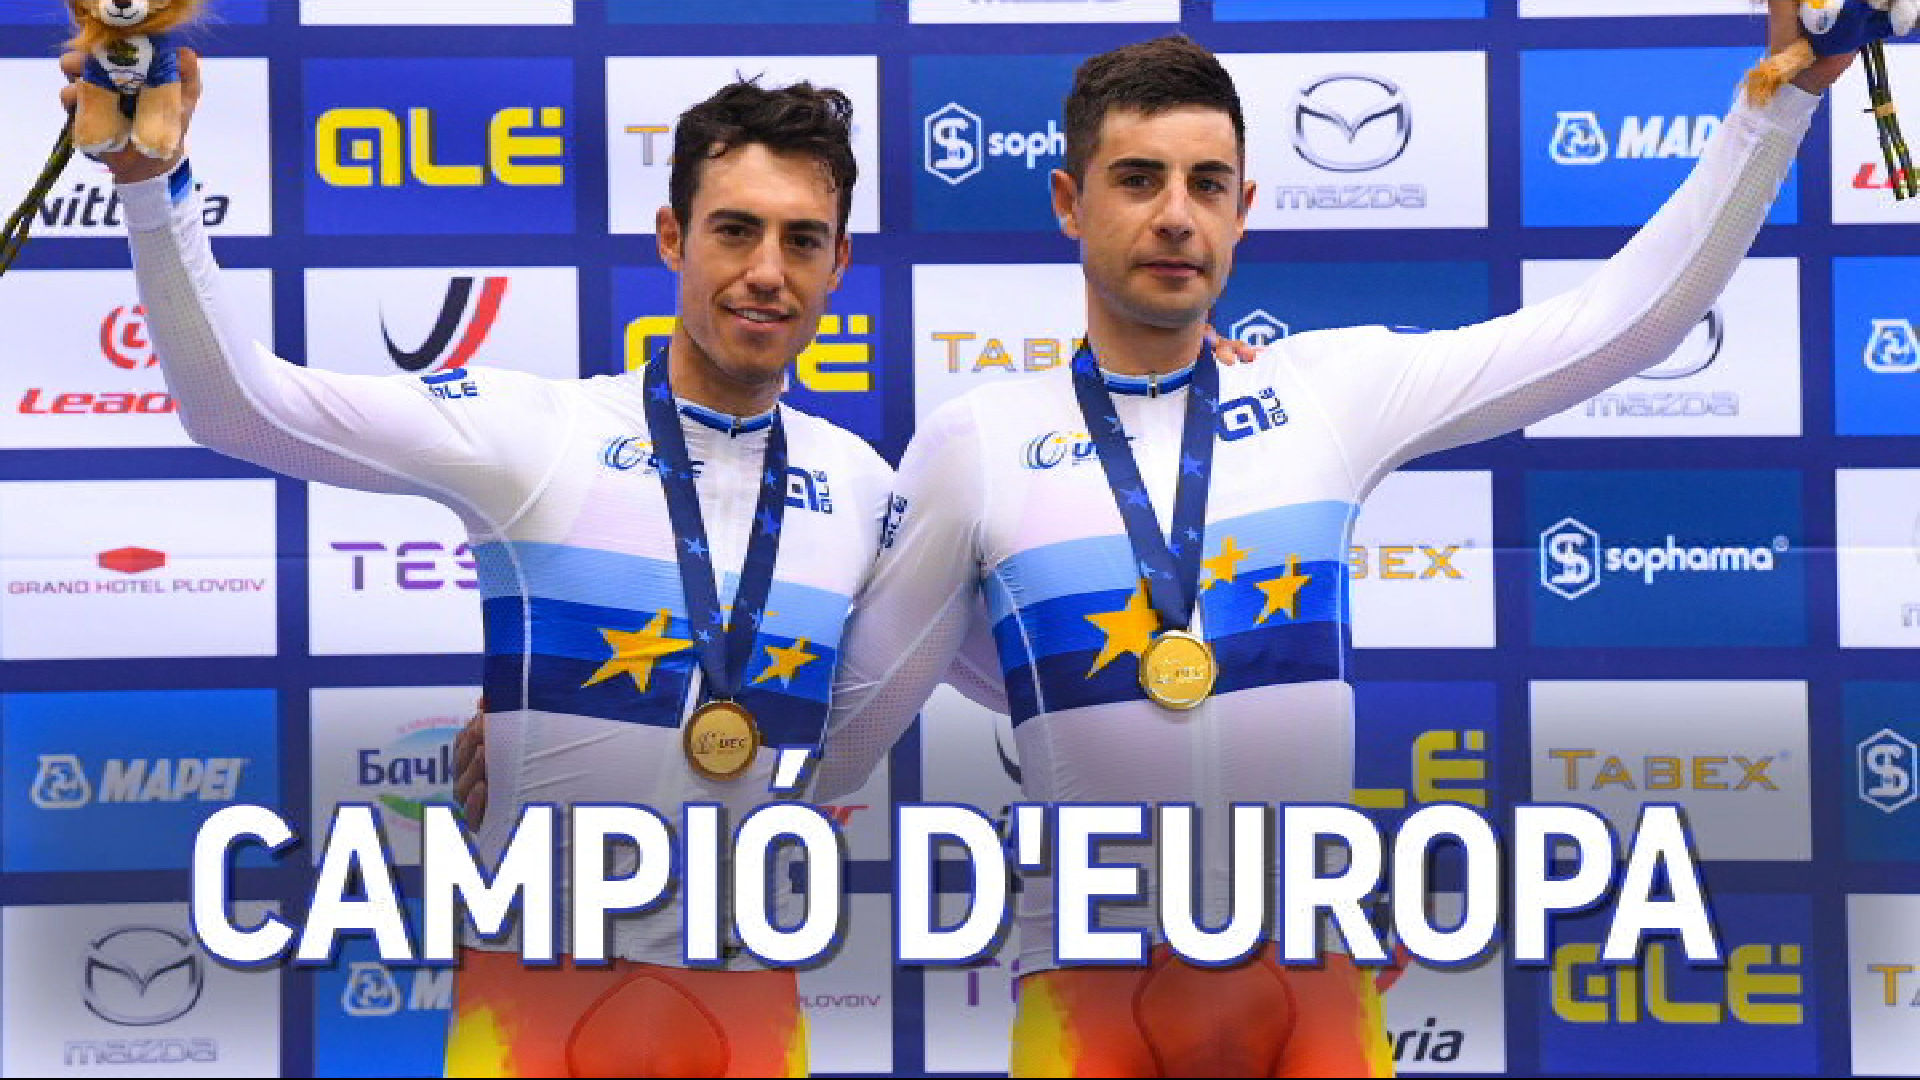 Albert+Torres+i+Sebasti%C3%A1n+Mora+es+proclamen+campions+d%26apos%3BEuropa+de+ciclisme+en+pista